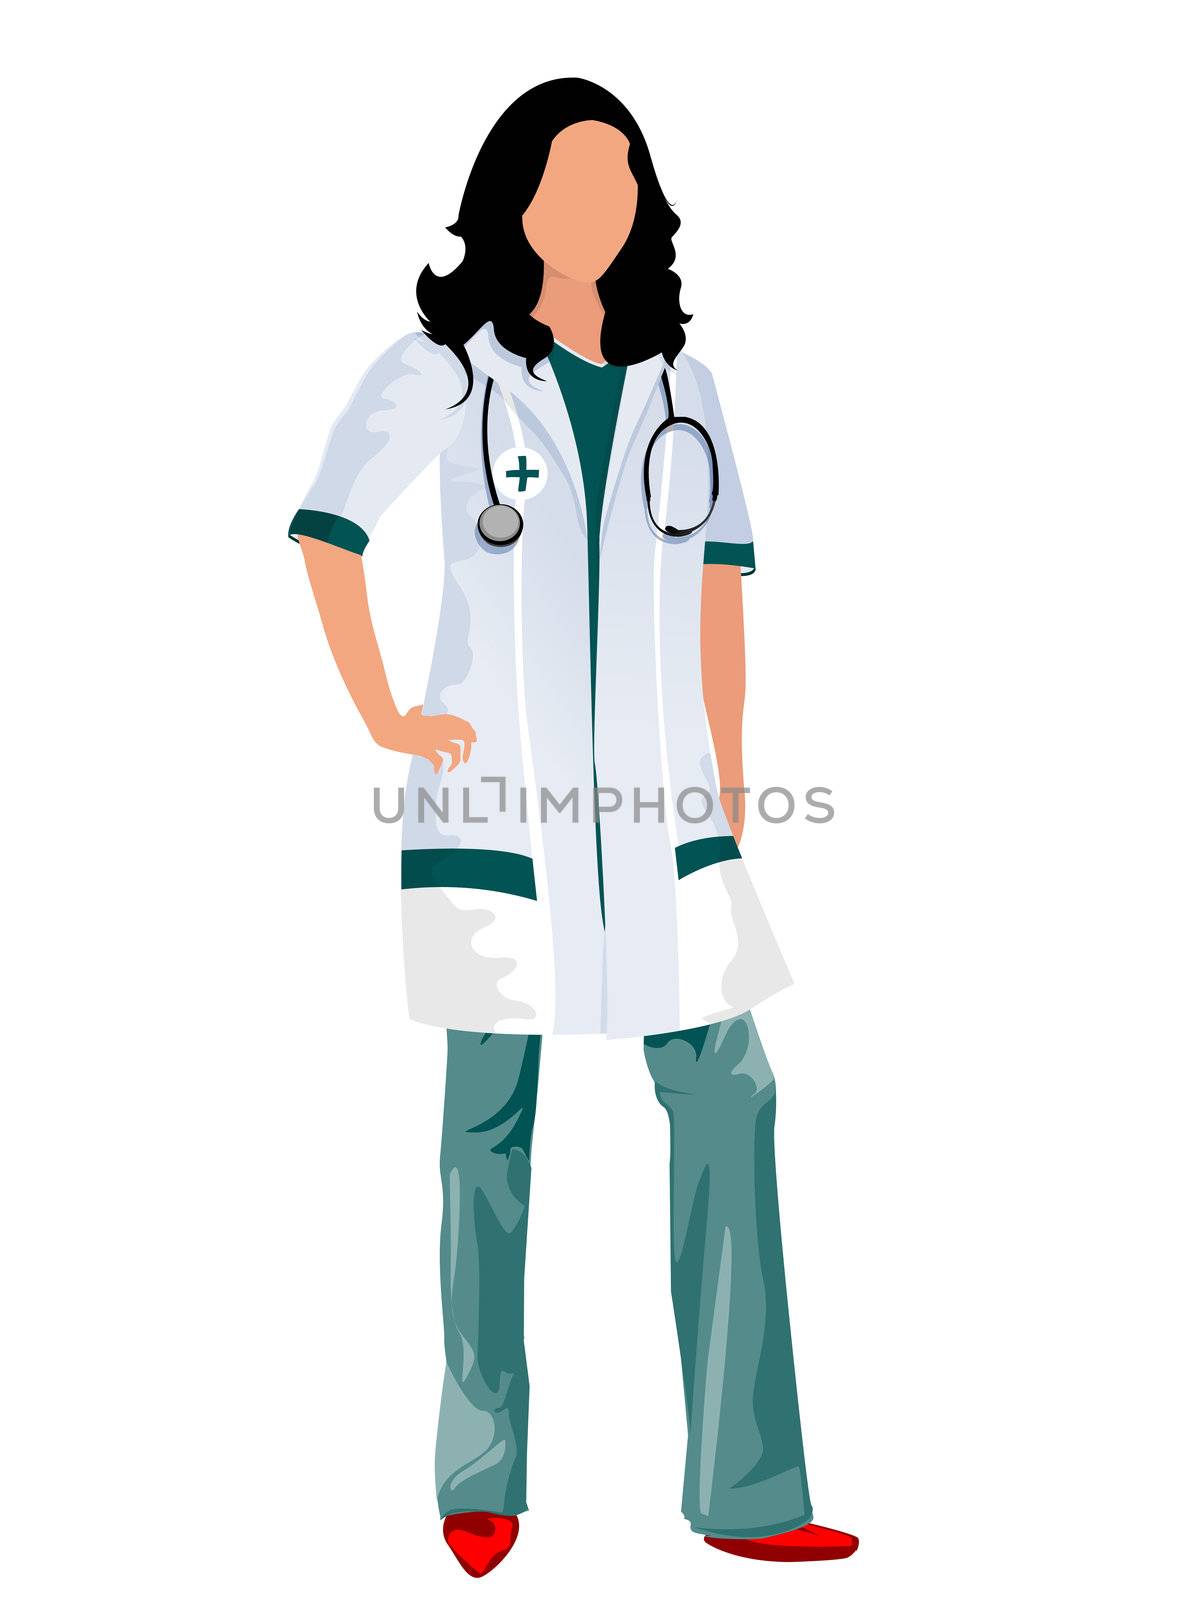 Female doctor by Lirch